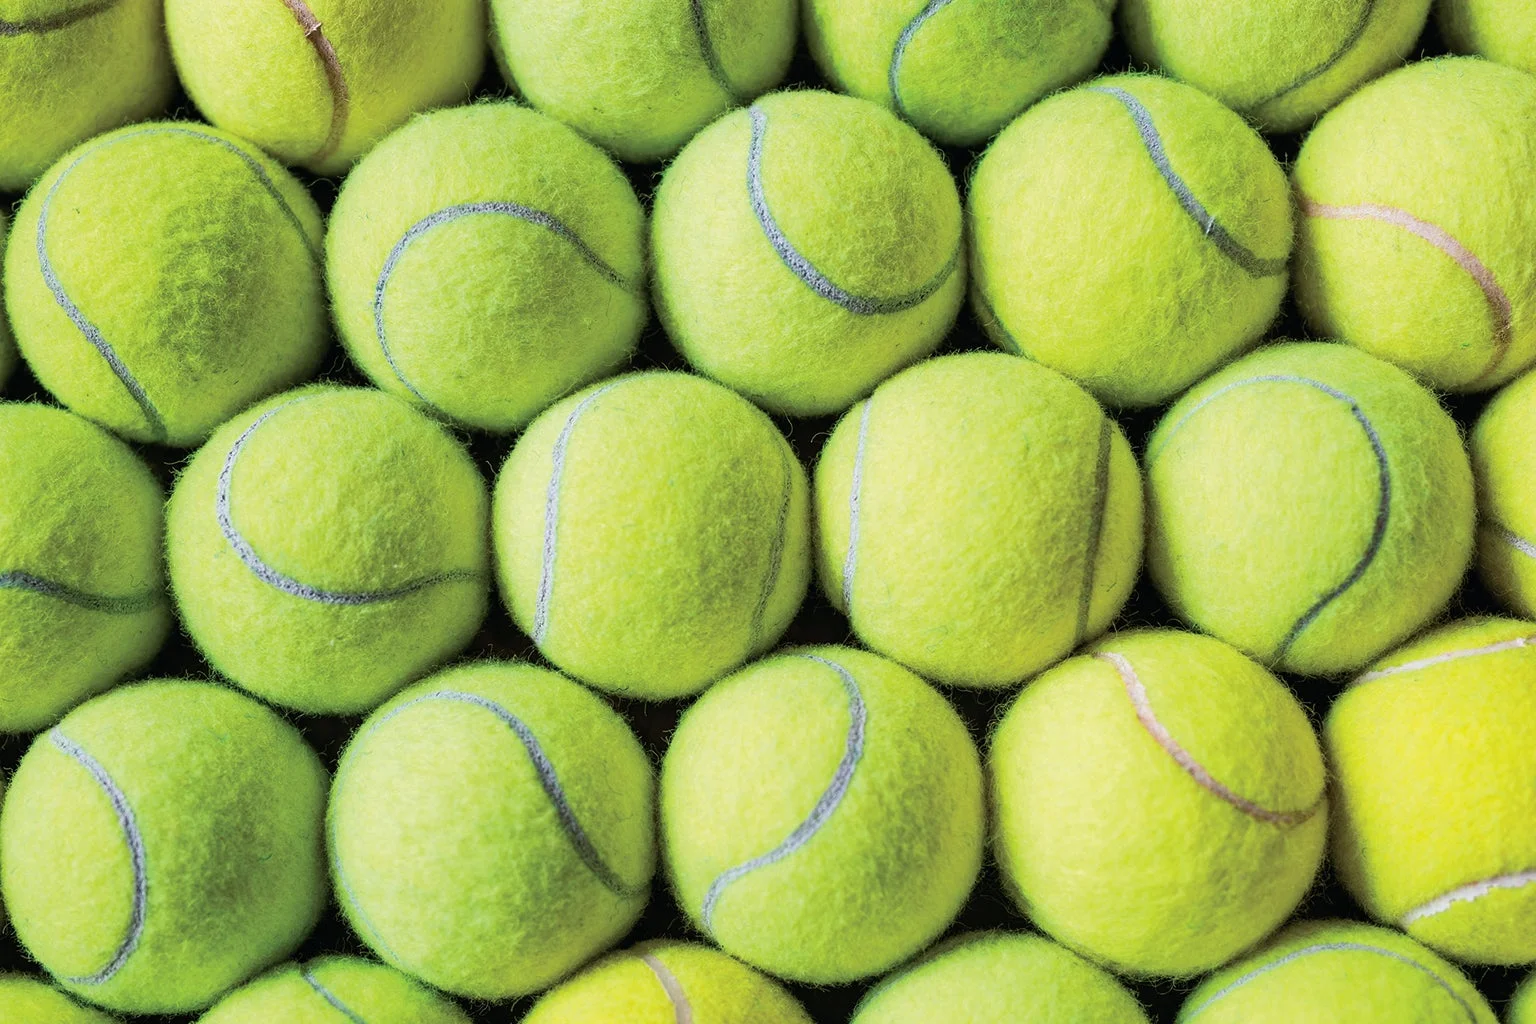 Tennis Ball Size & Bounce Test